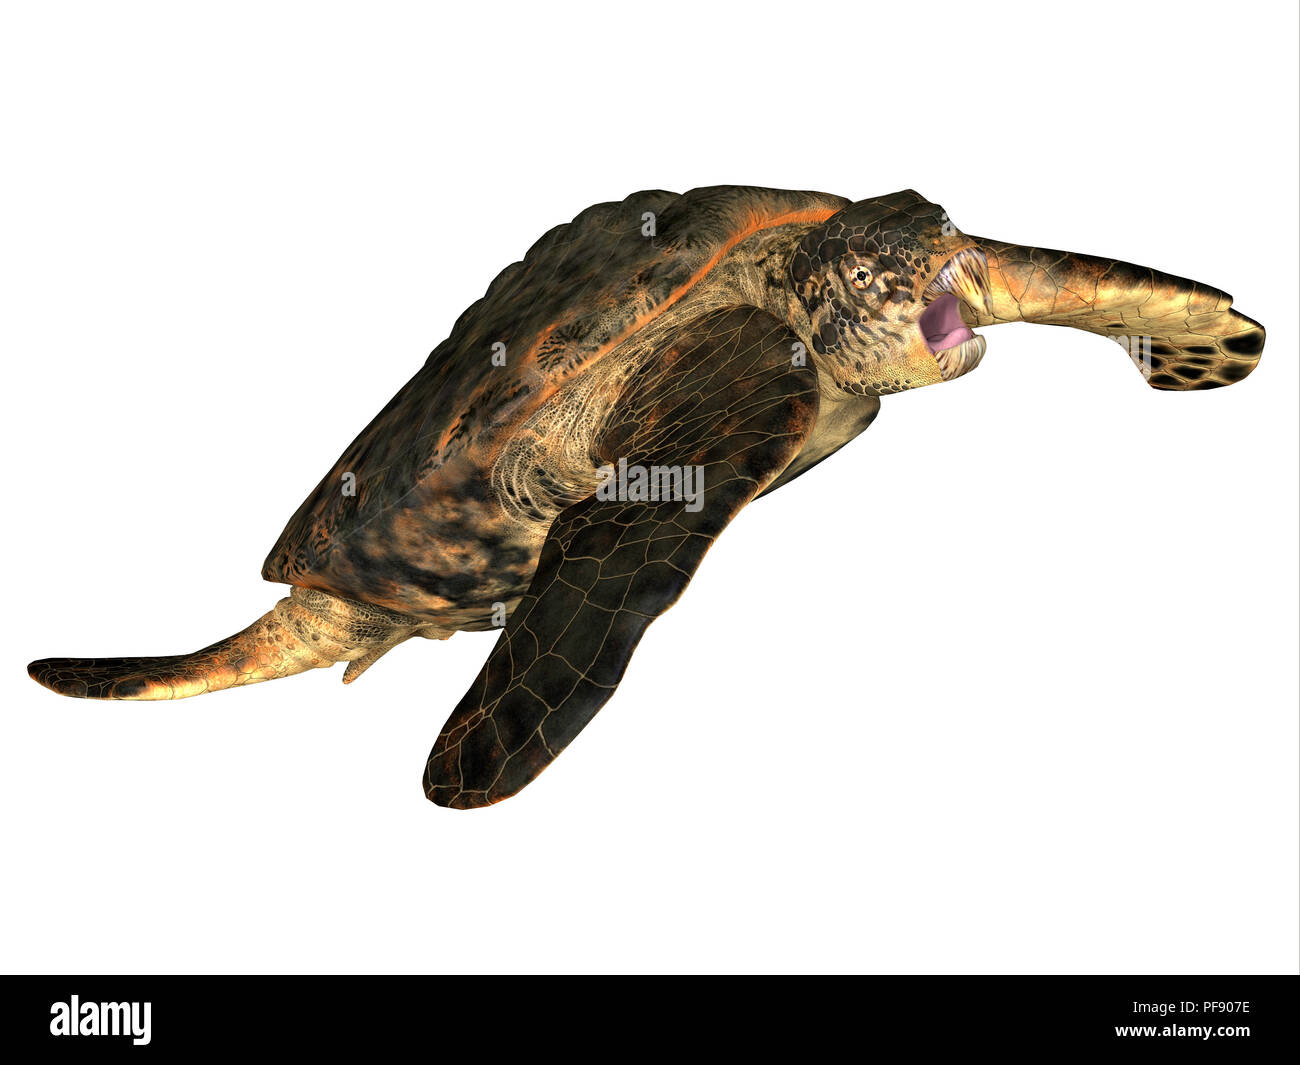 Tortues Archelon - Archelon était un reptile aquatique tortue de mer qui vivaient dans le Dakota du Sud, USA au cours de la période du Crétacé. Banque D'Images